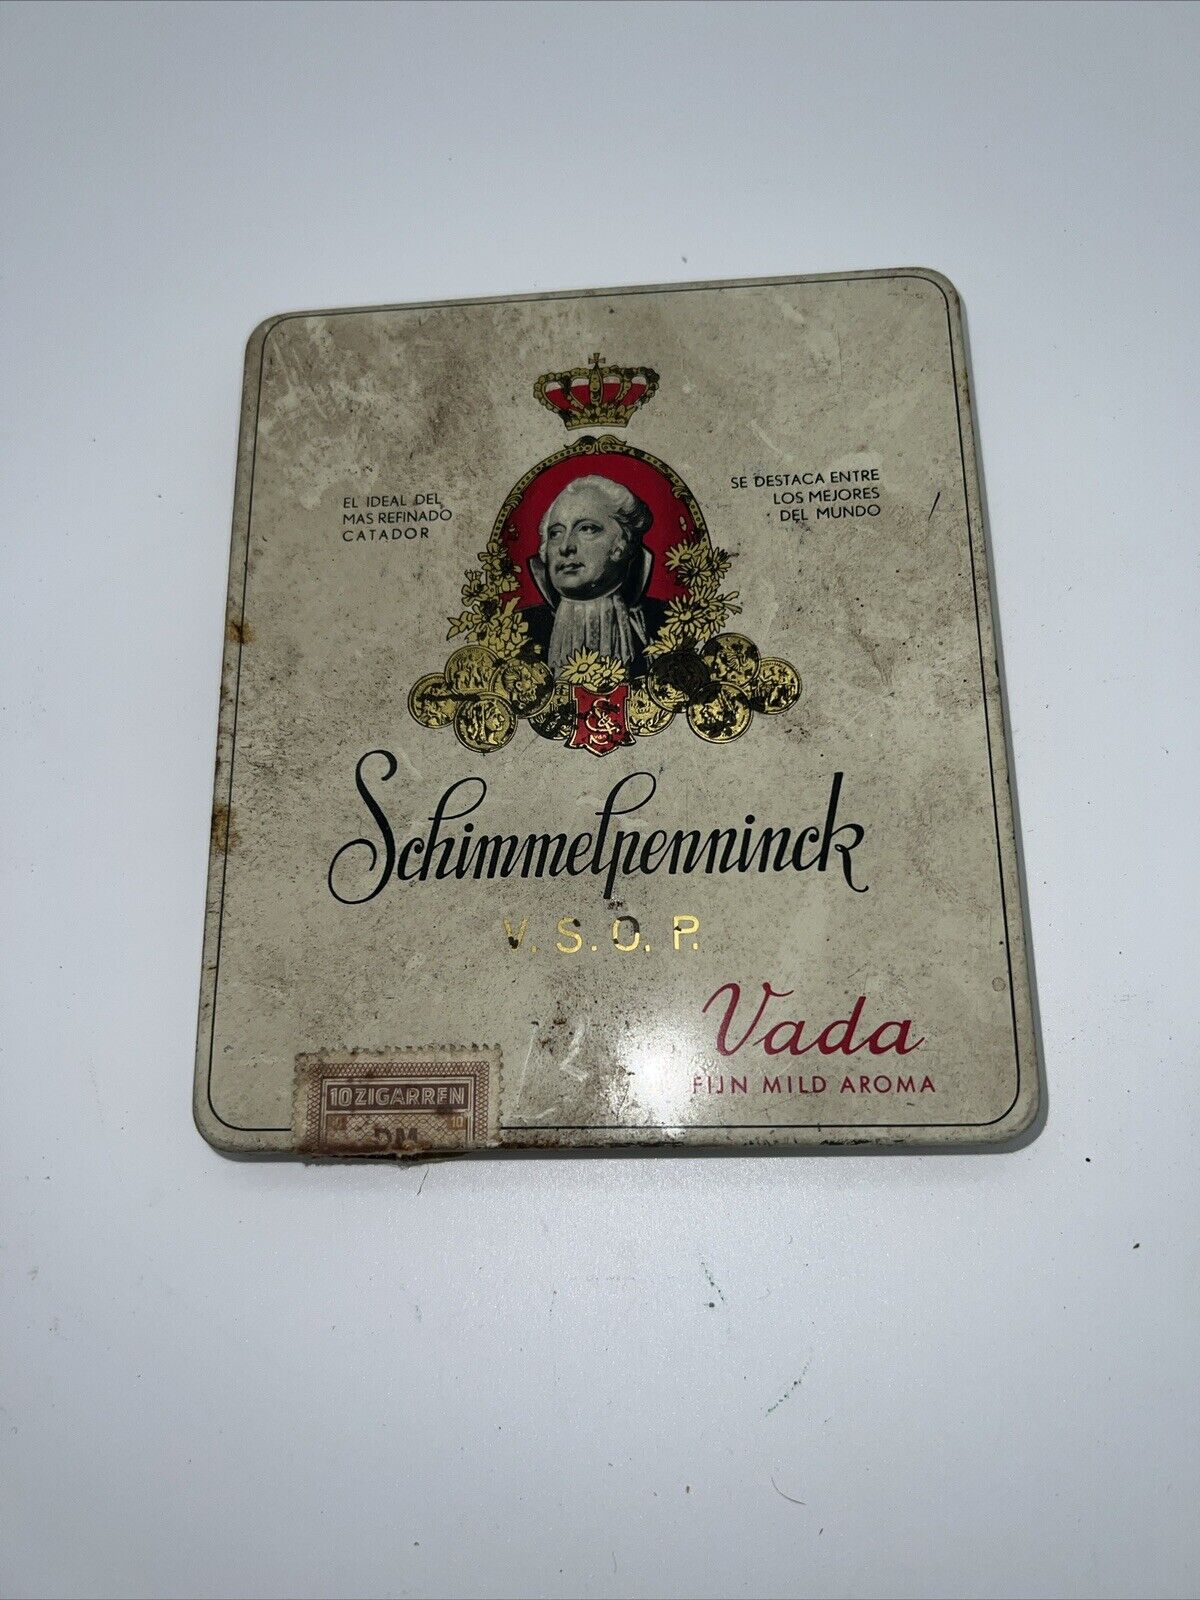 Schimmelpenninck 10 Sigaren Cigarette Tin Box Holland by Vada - Swanky Barn